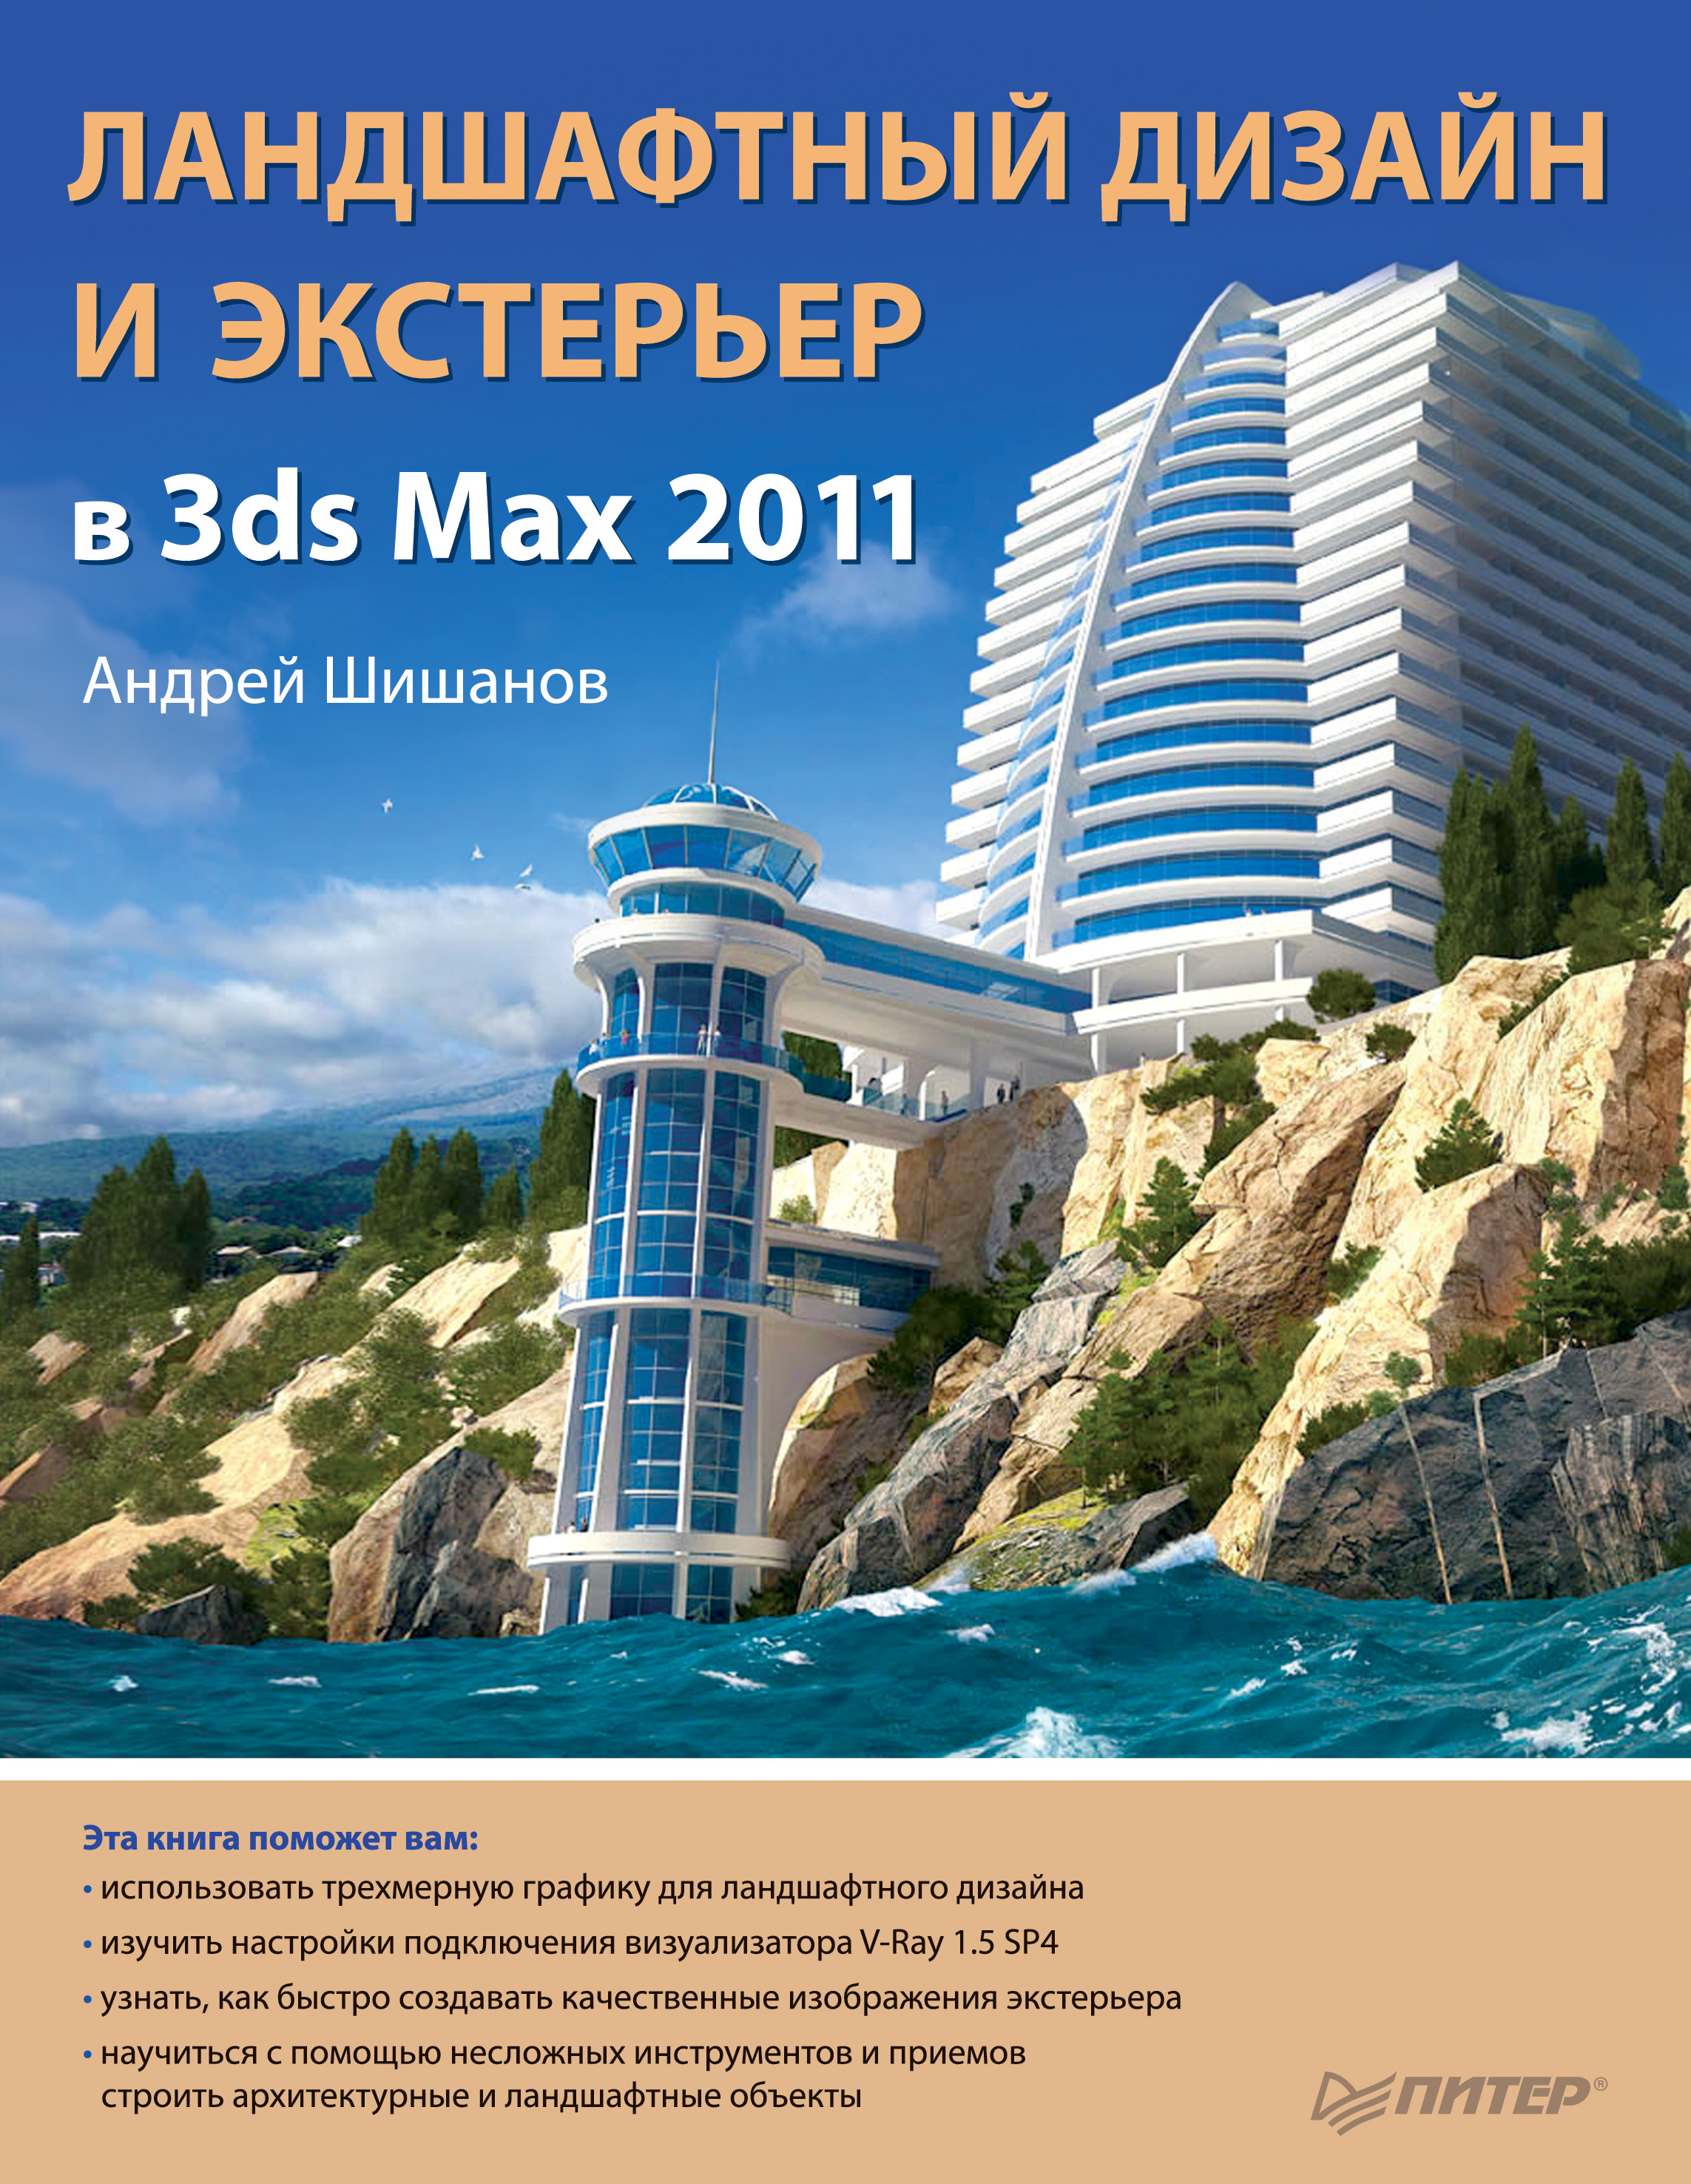 Книга  Ландшафтный дизайн и экстерьер в 3ds Max 2011 созданная Андрей Шишанов может относится к жанру программы. Стоимость электронной книги Ландшафтный дизайн и экстерьер в 3ds Max 2011 с идентификатором 587165 составляет 89.00 руб.